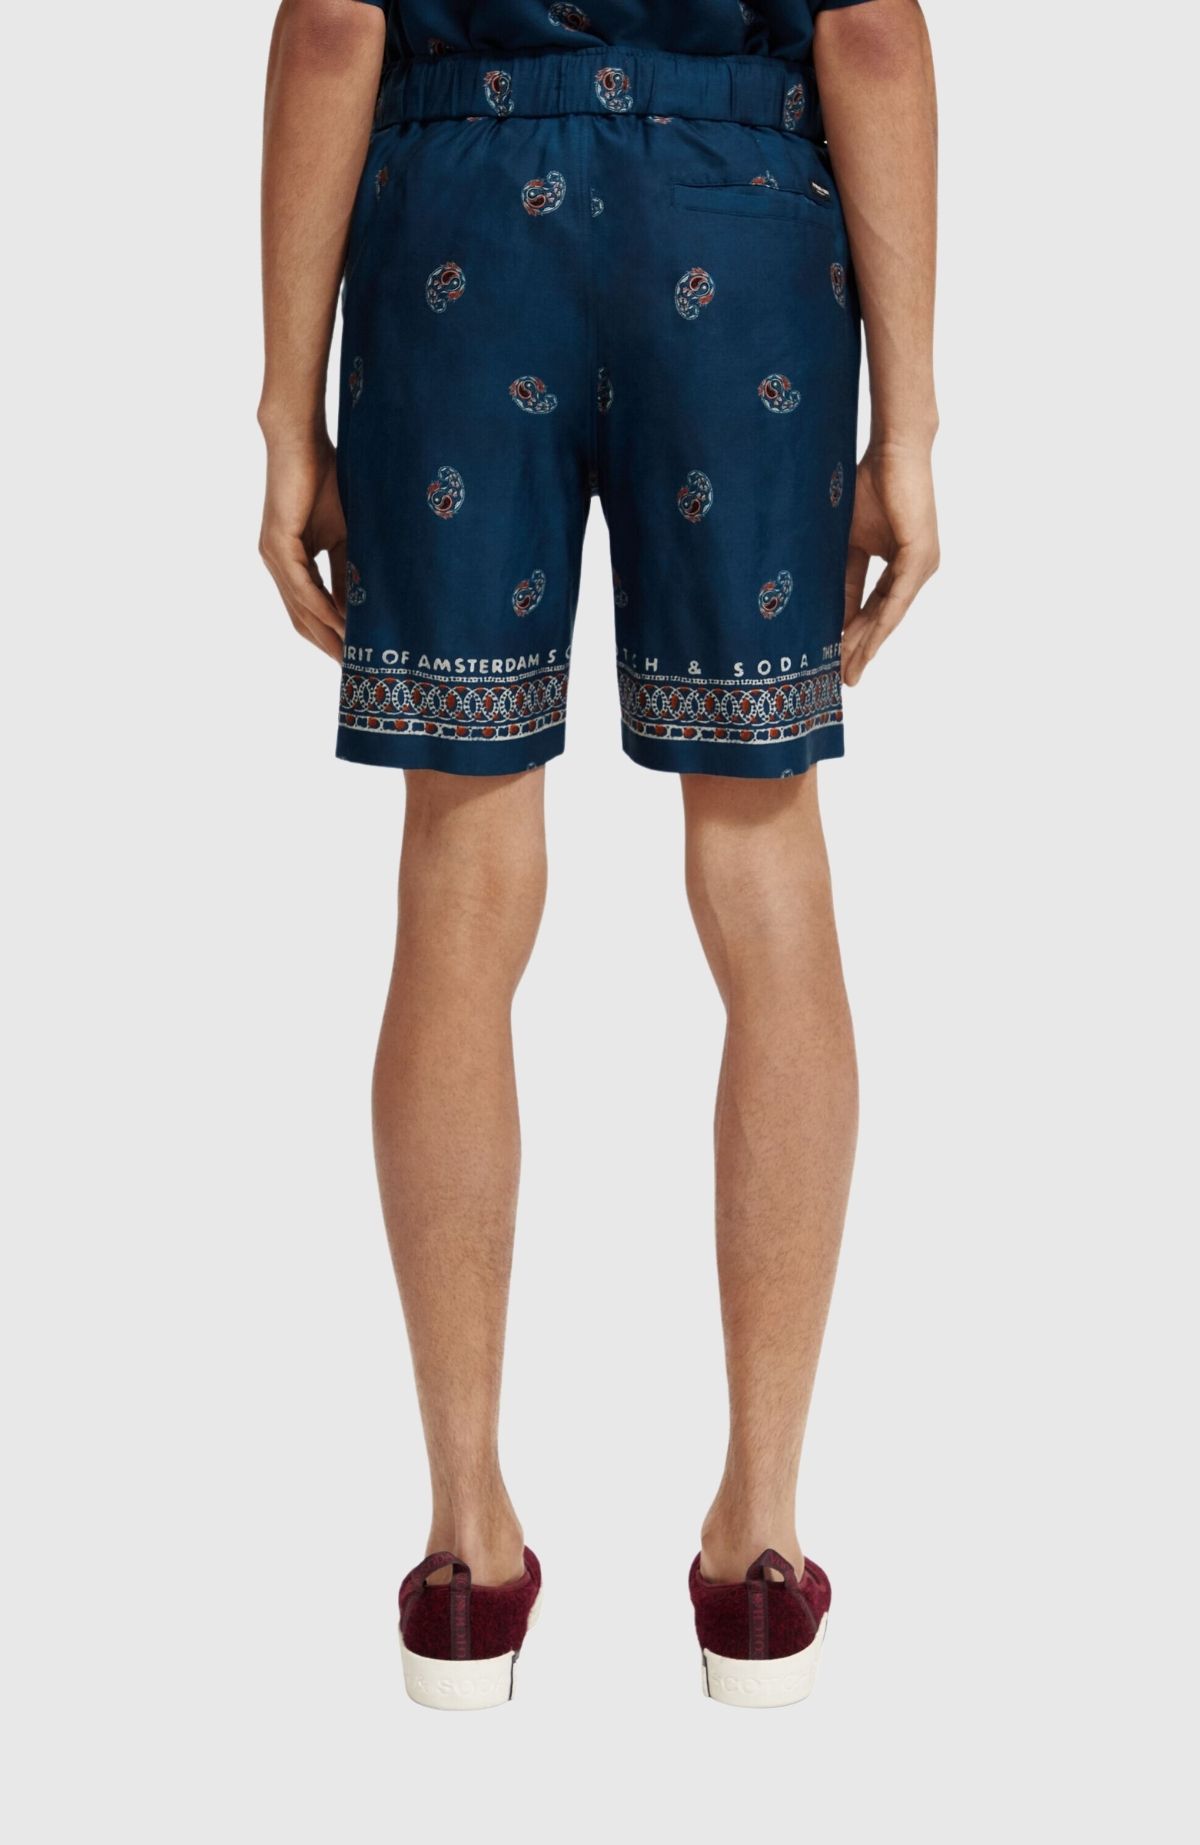 Seasonal – Relaxed Fit Bermuda shorts